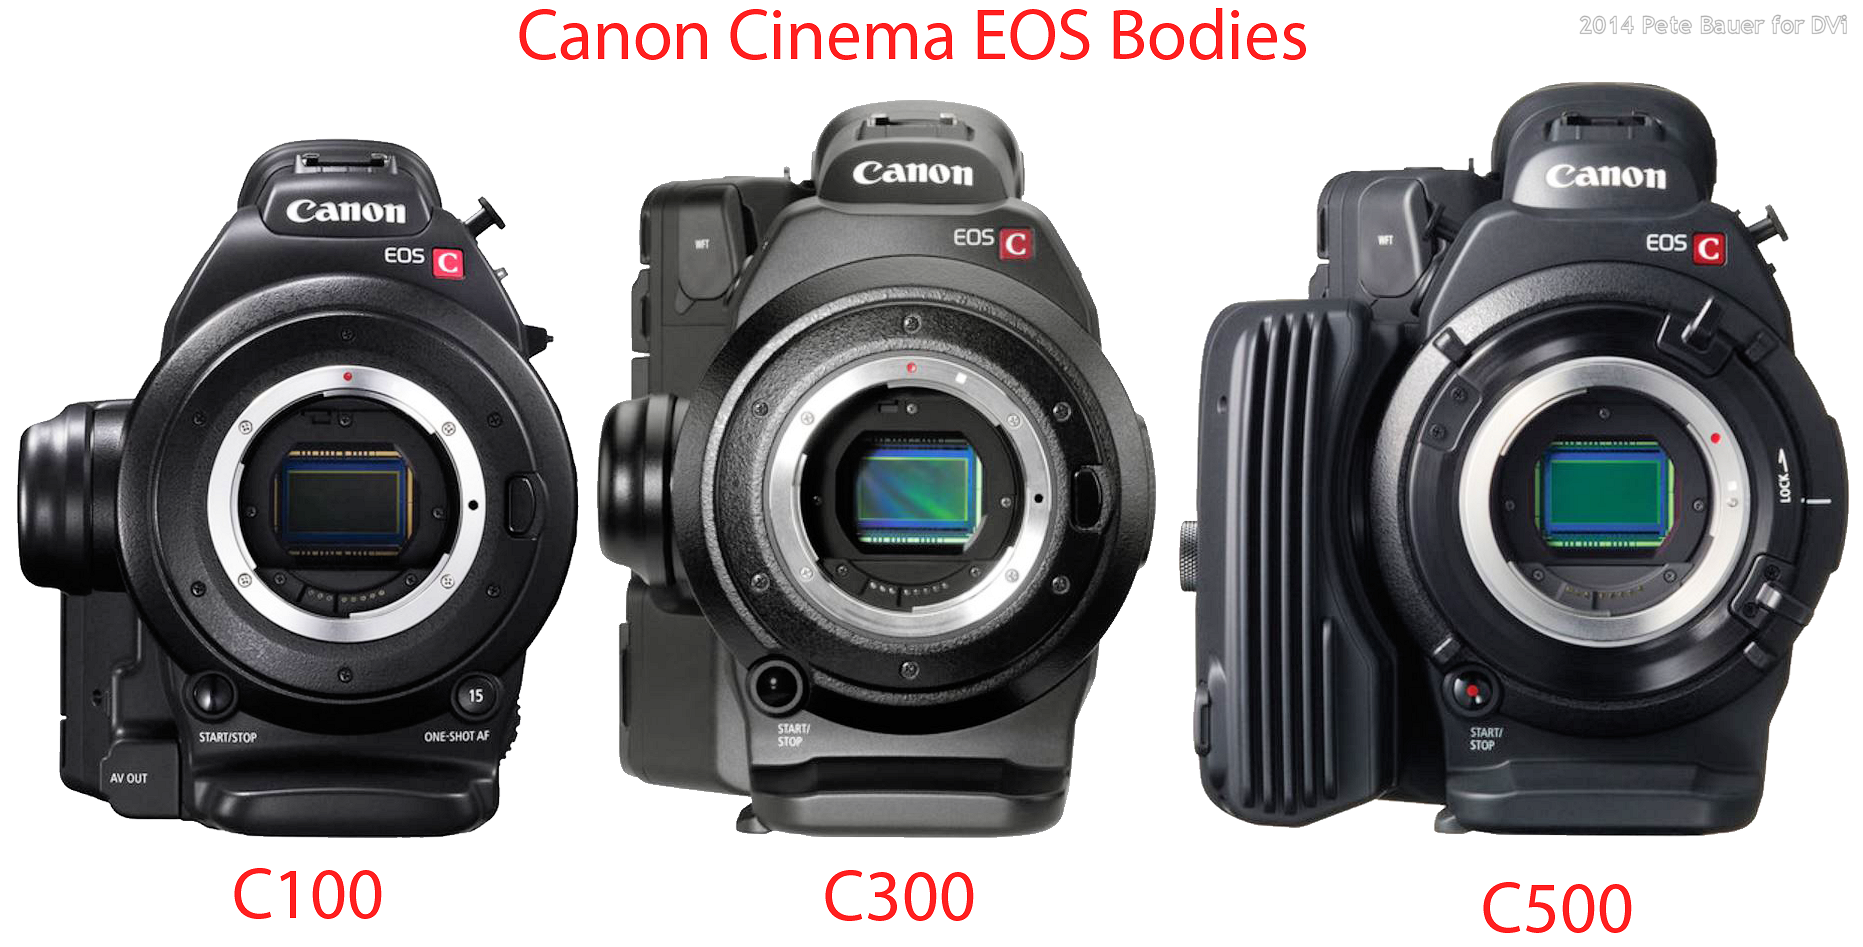 Canon Cinema EOS: Which Camera?